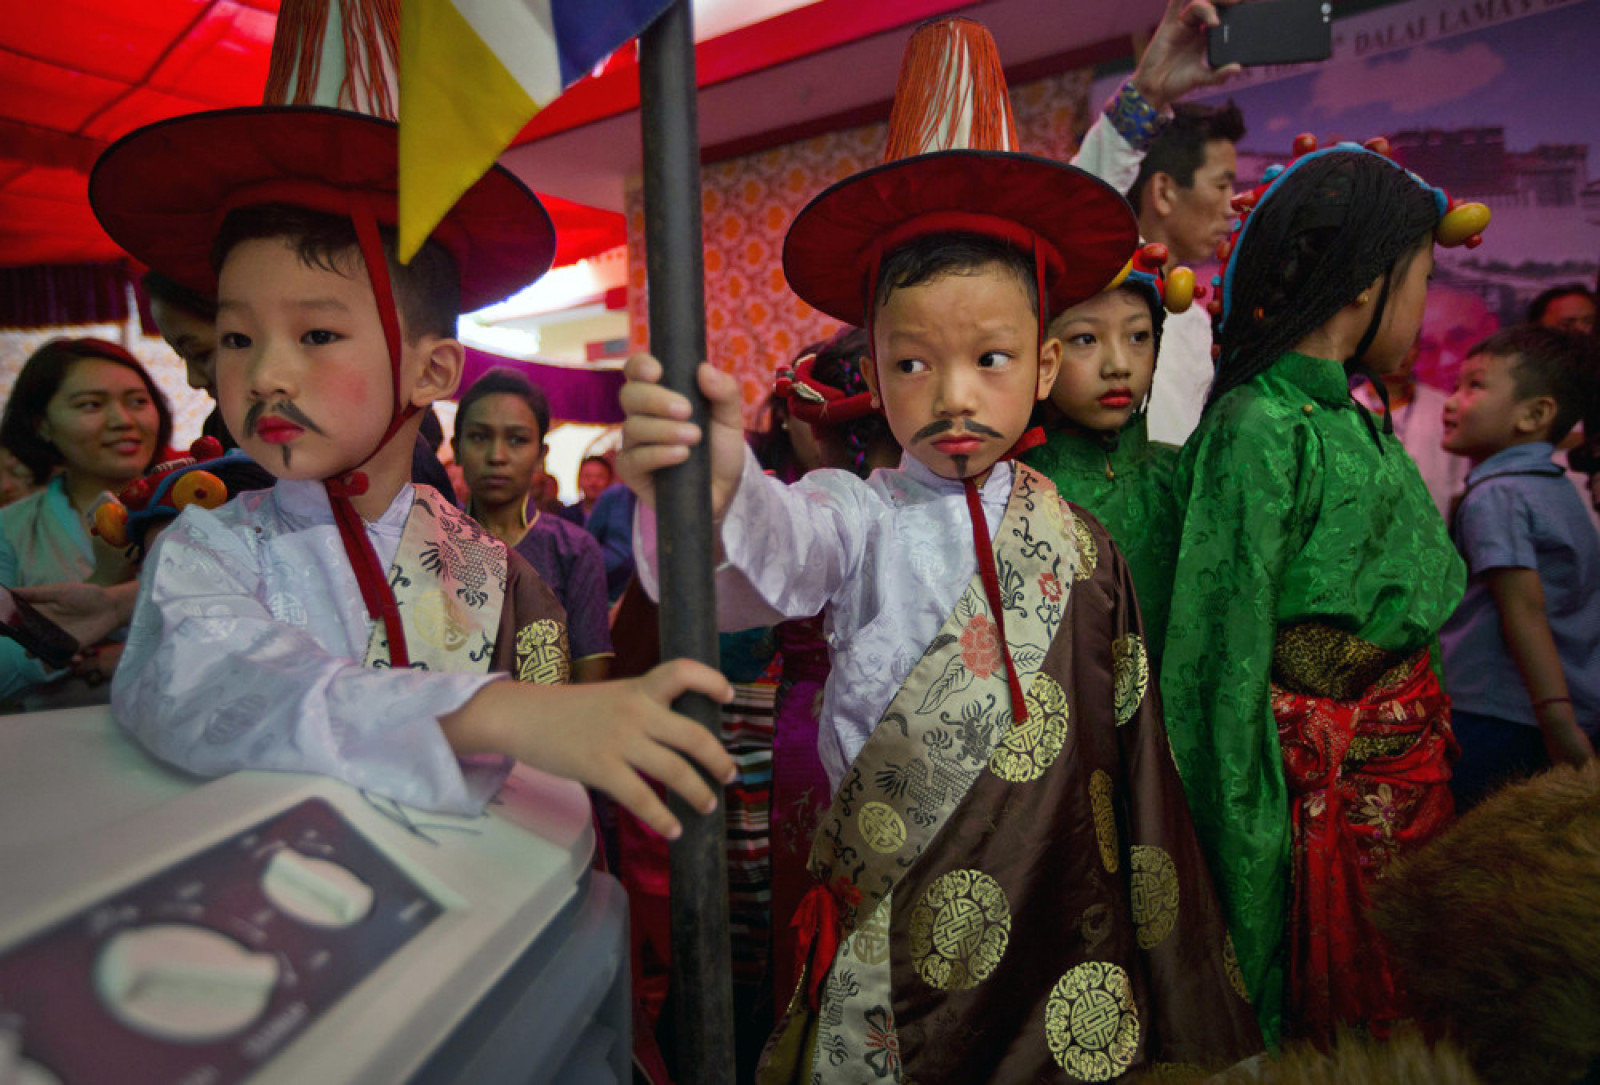 Діти святкують 82-й день народження духовного лідера Далай-лами в Тибетському поселенні в Нью-Делі, Індія, 6 липня 2017. (Photo by Manish Swarup / AP Photo)